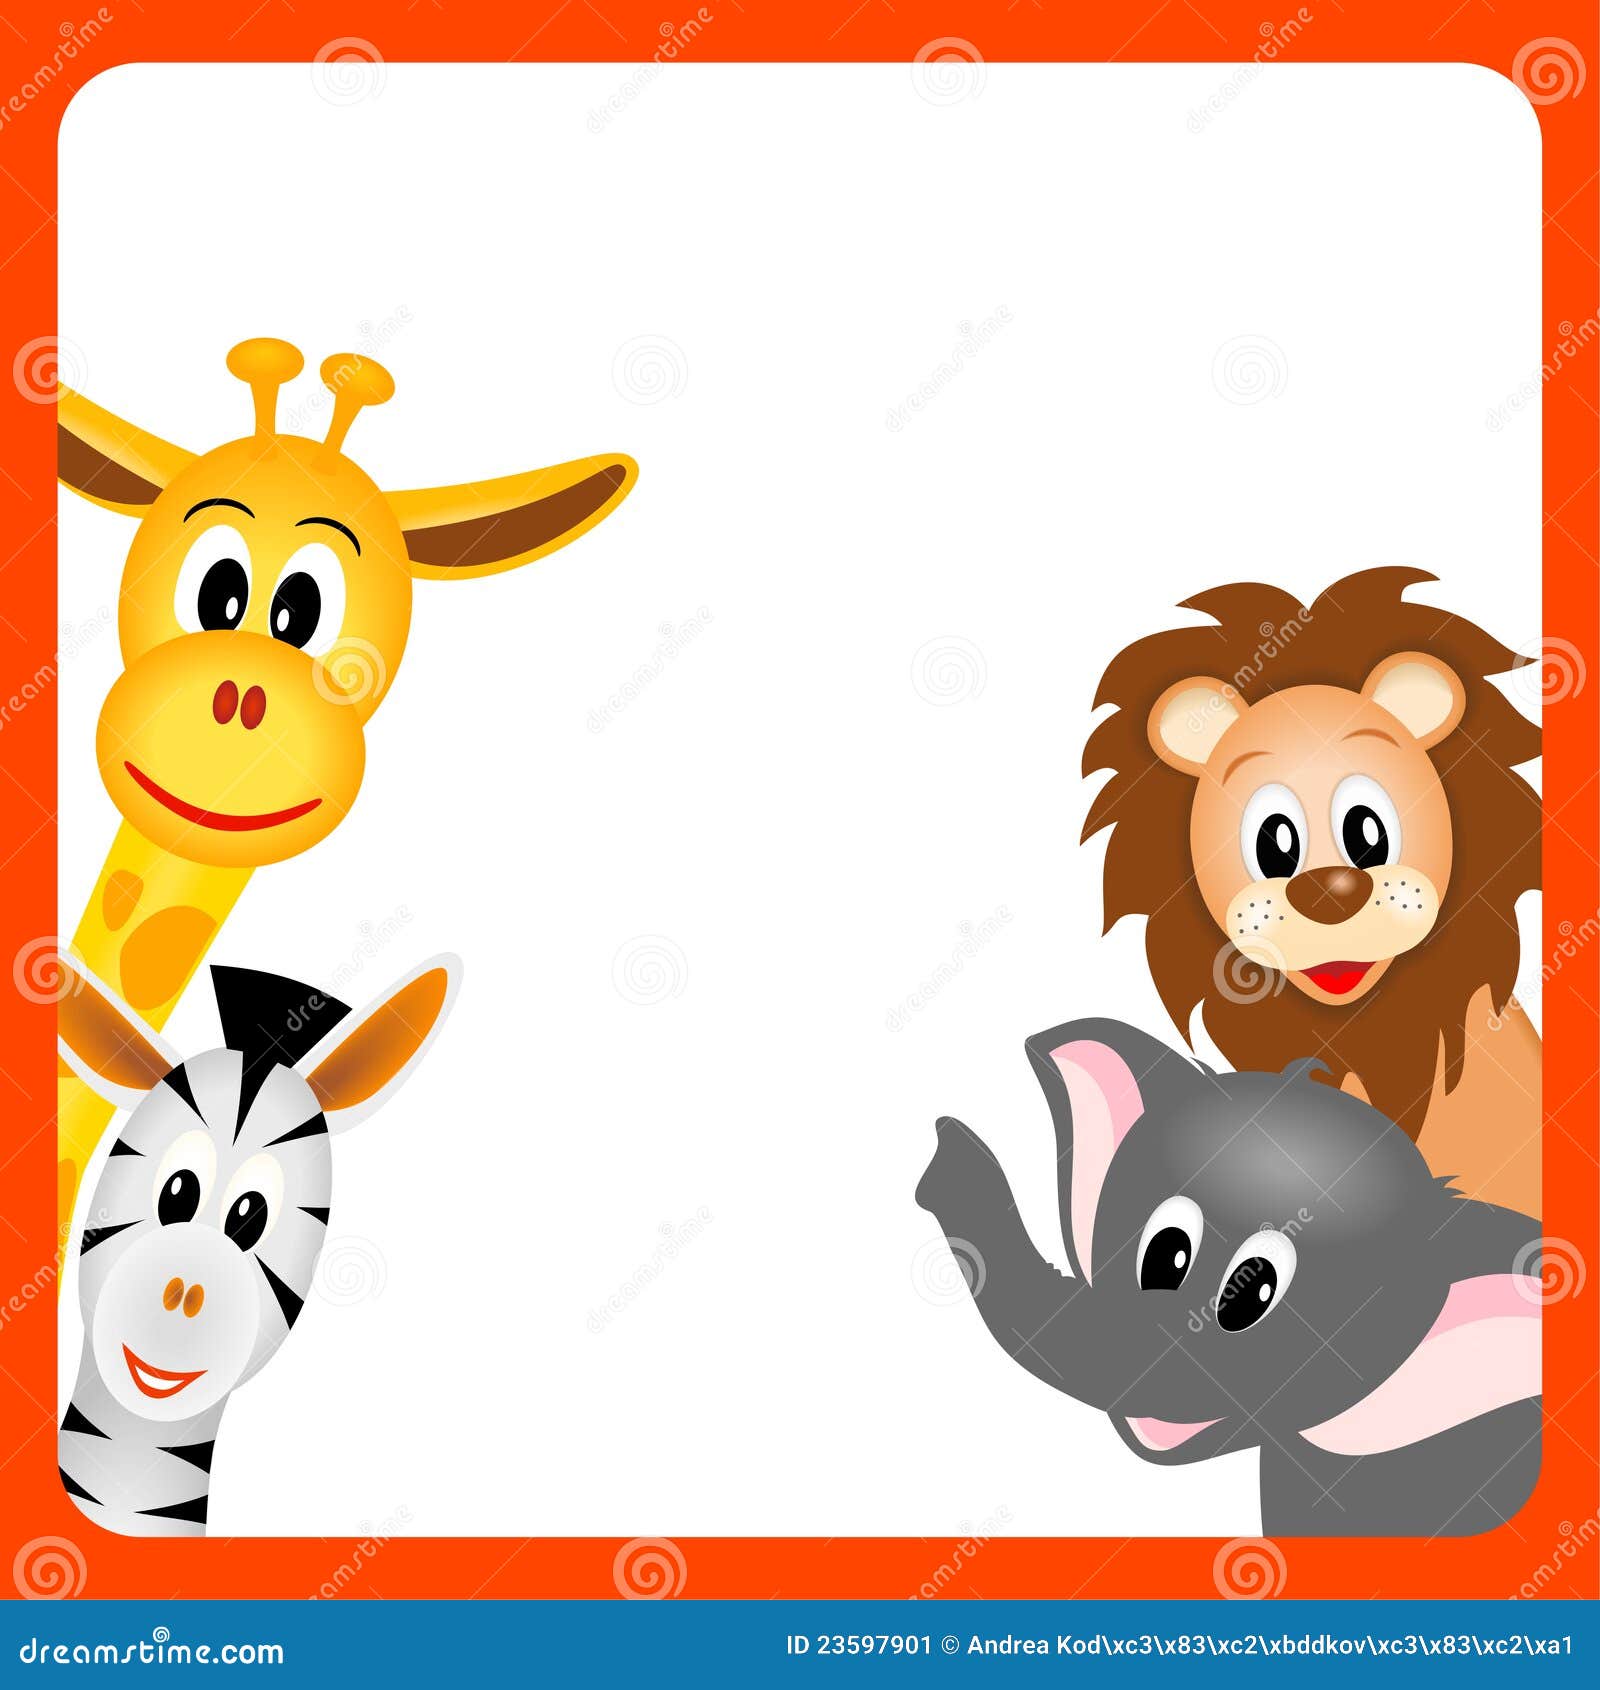 Giraffe, Elephant, Zebra and Lion Stock Vector - Illustration of feline,  border: 23597901